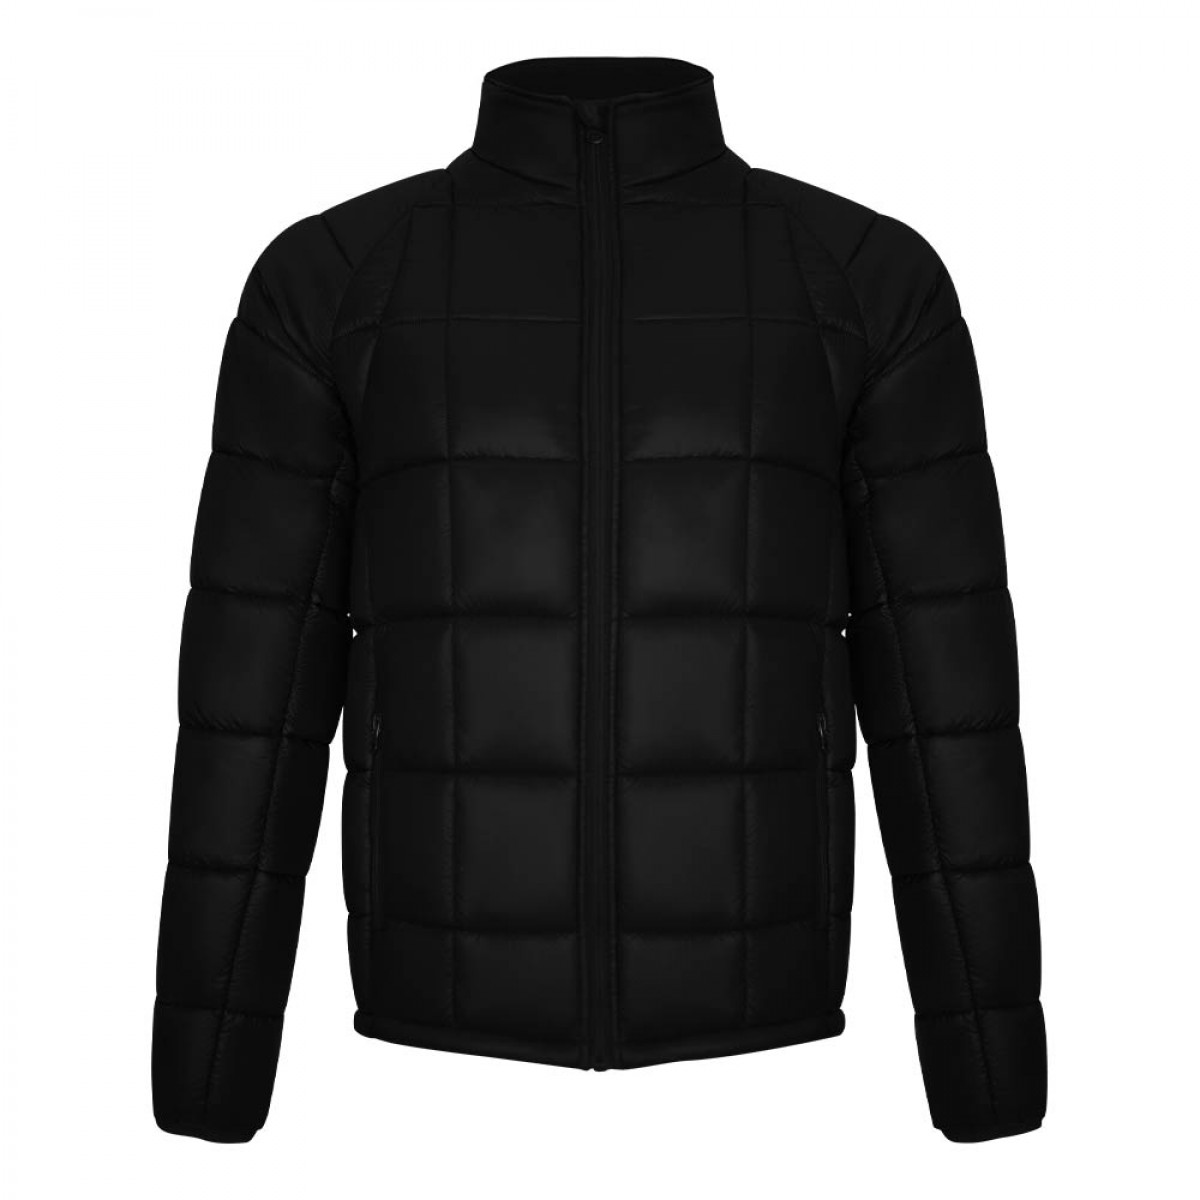 extreme-jacket-kej15162-8a